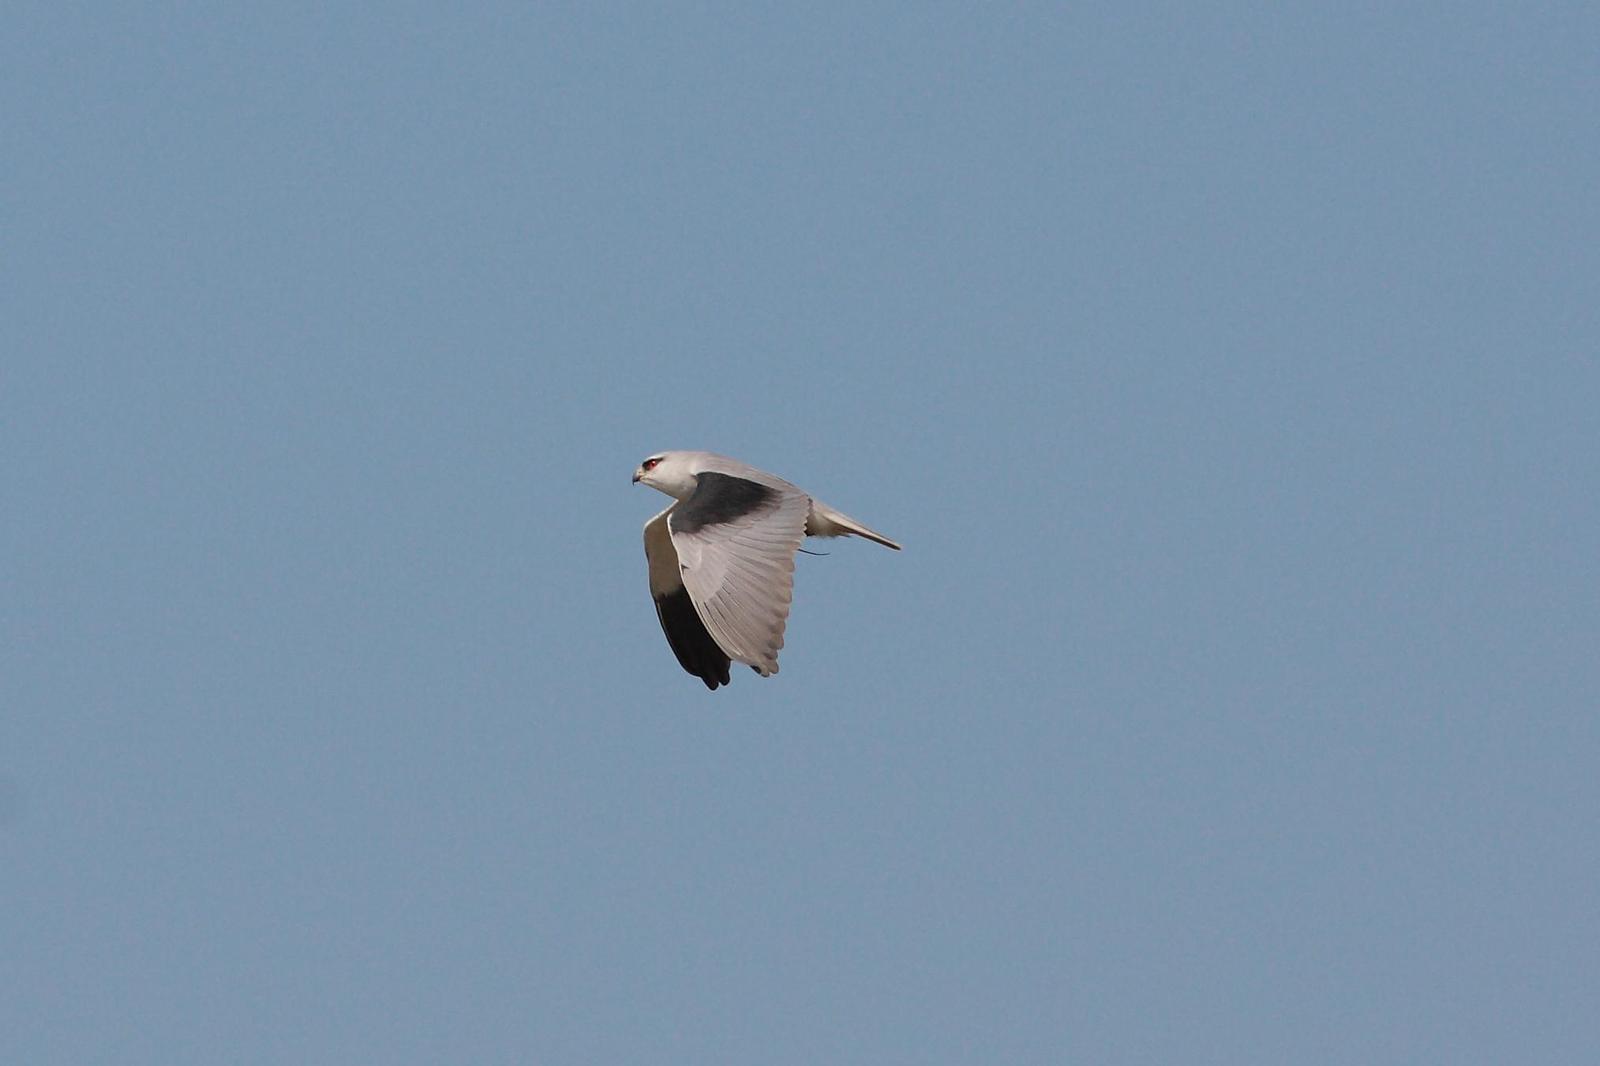 Black-winged Kite Photo by Mu-Chi Tsai